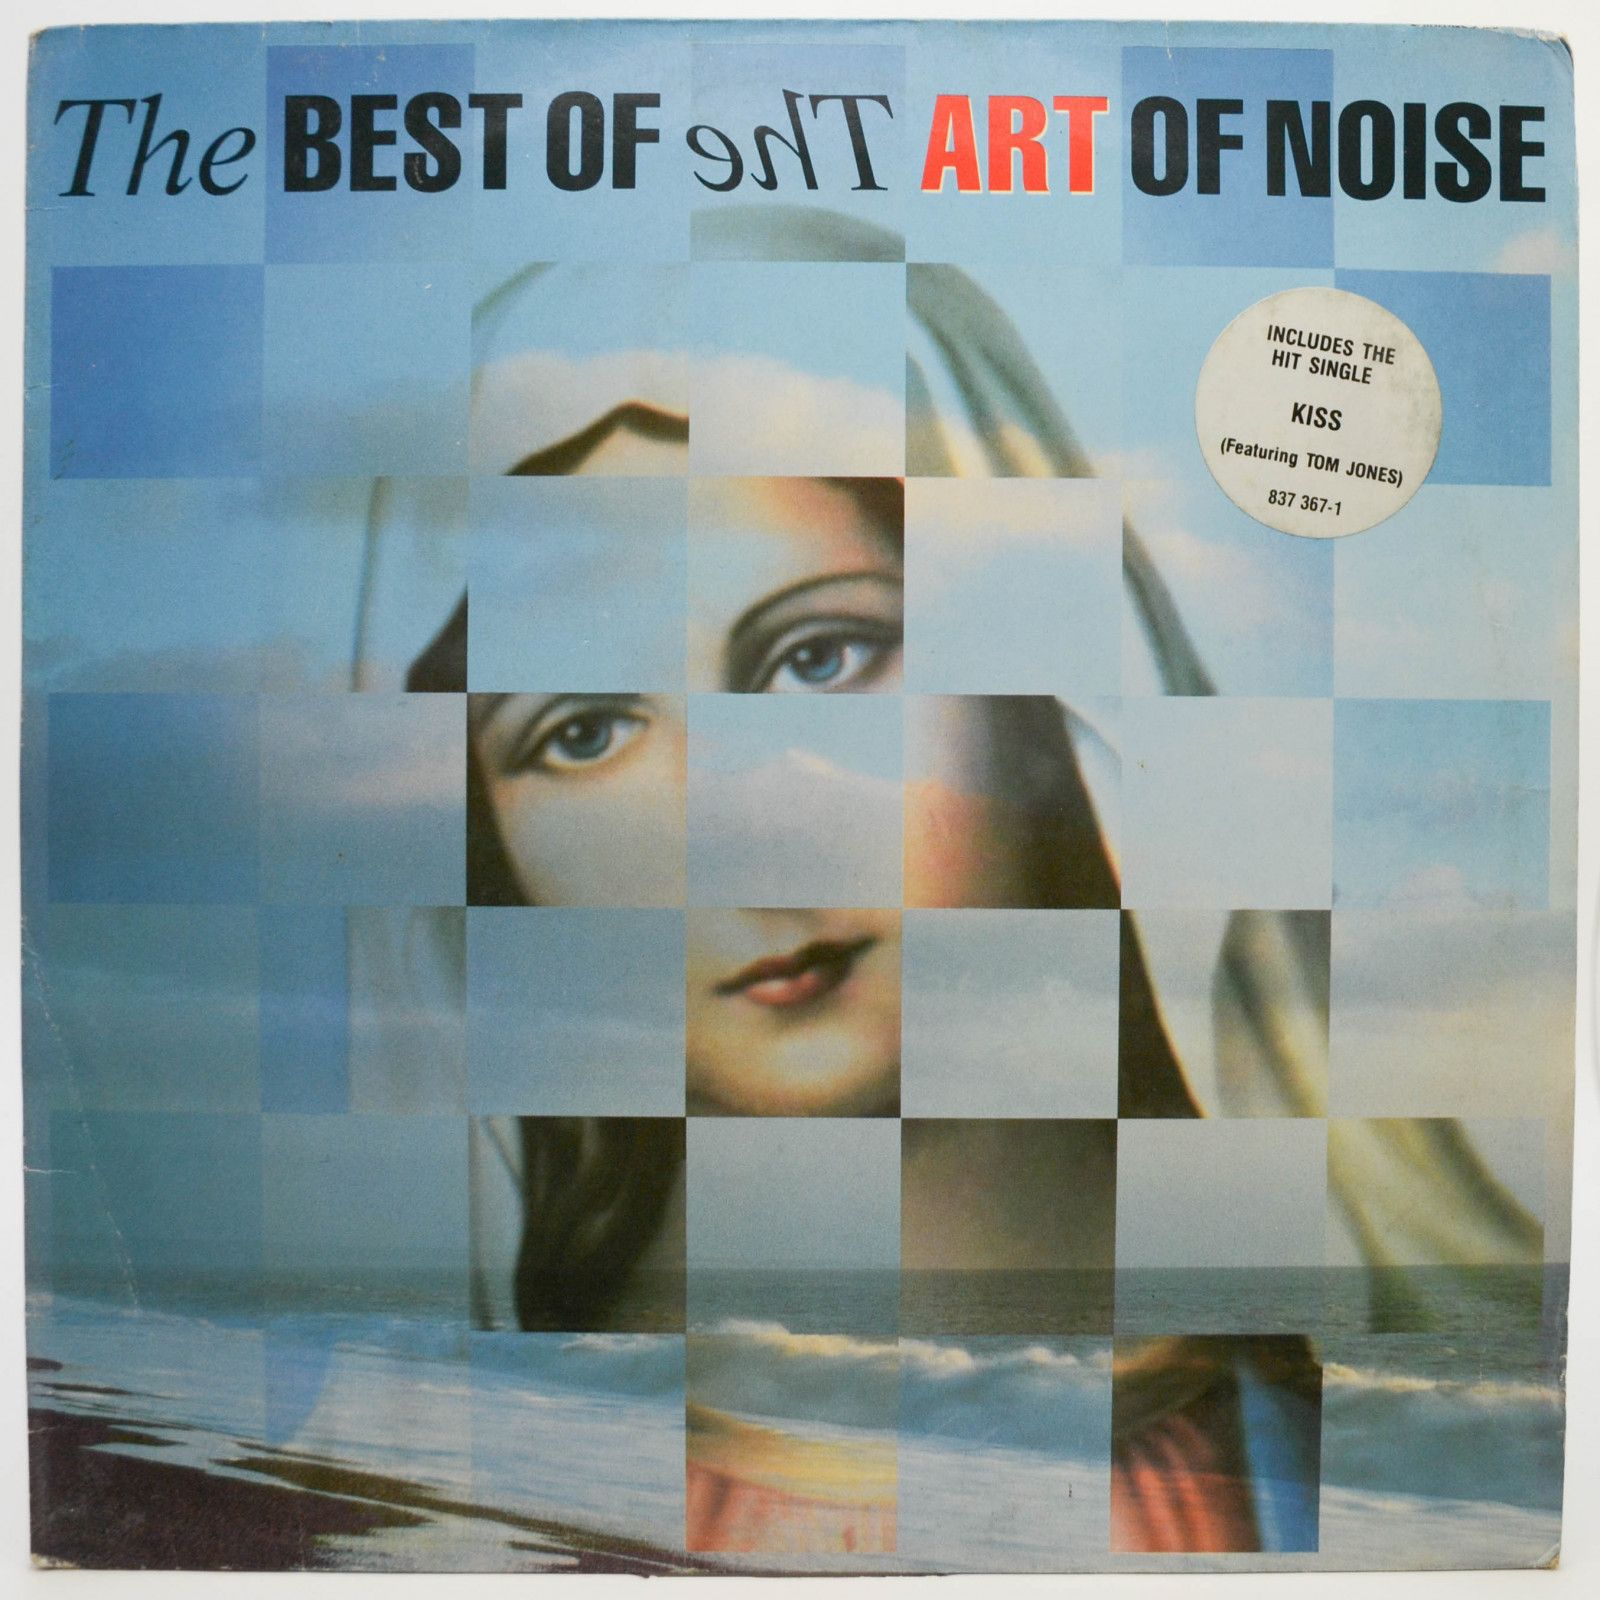 Art Of Noise — Art Of Noise – The Best Of The Art Of Noise, 1988